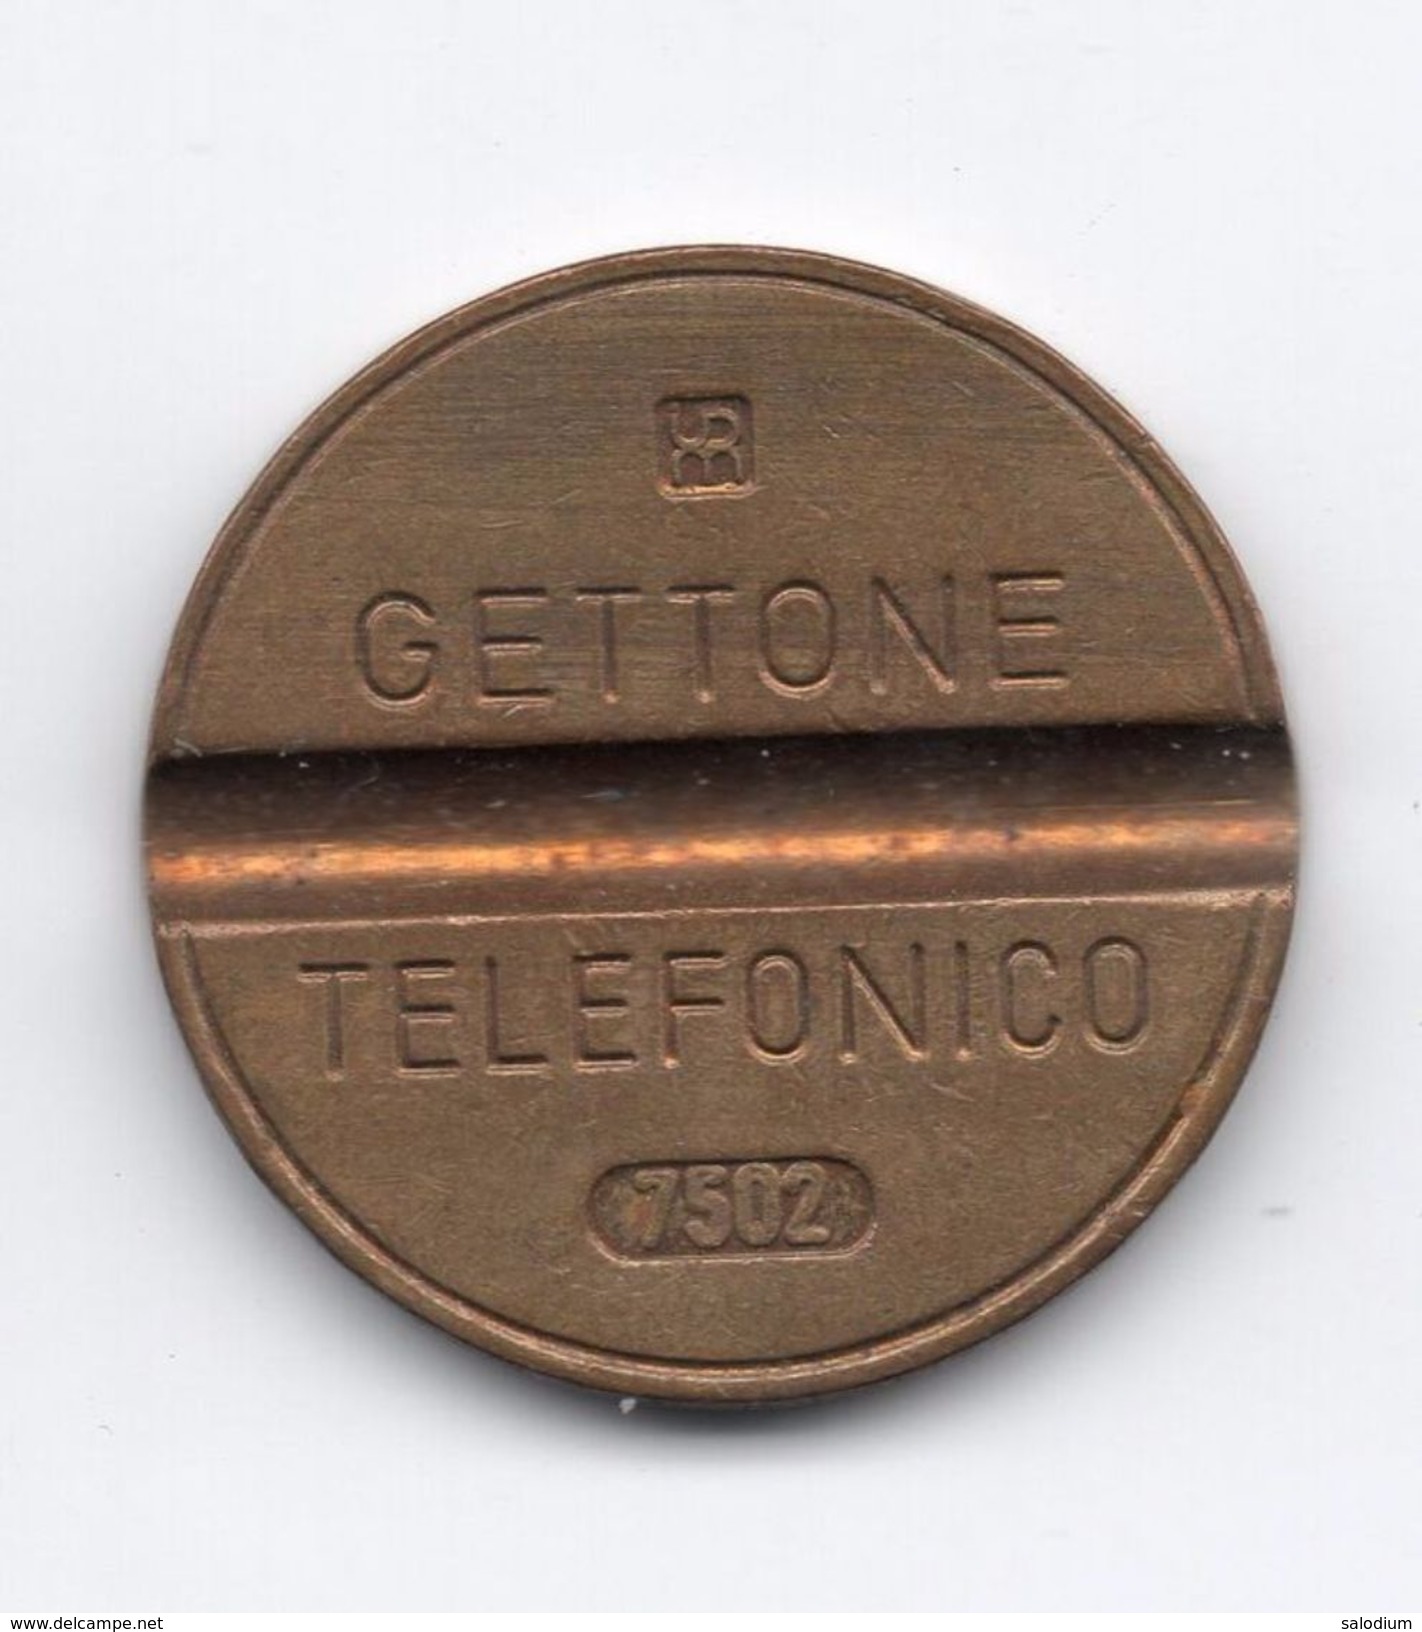 Gettone Telefonico 7502 Token Telephone - (Id-758) - Professionnels/De Société